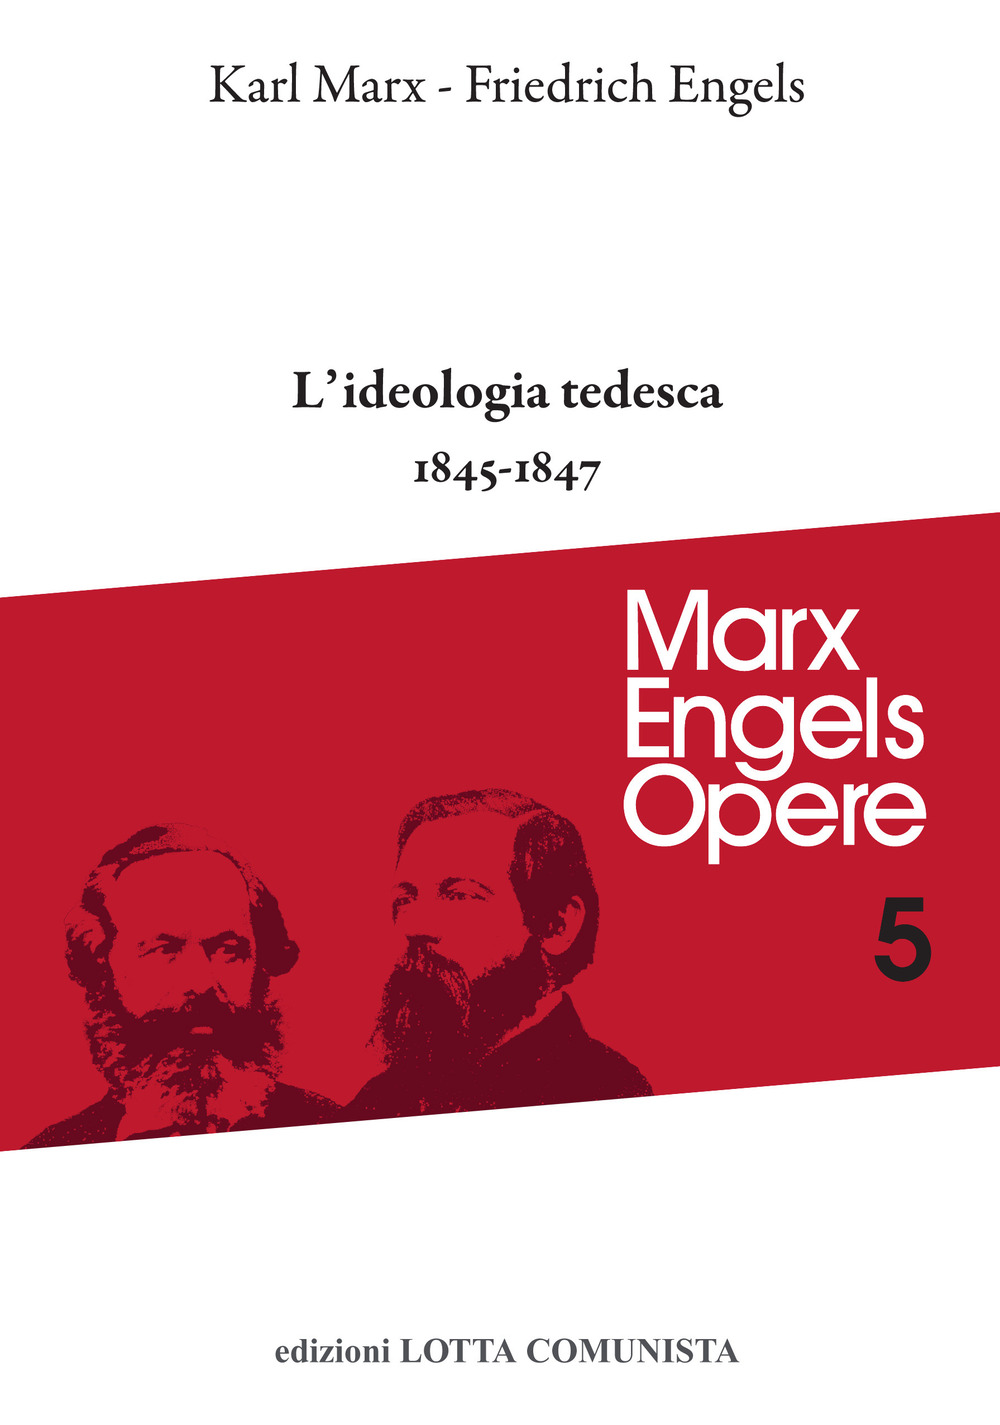 Libri Karl Marx / Friedrich Engels - Opere Complete Vol 05 NUOVO SIGILLATO, EDIZIONE DEL 23/03/2022 SUBITO DISPONIBILE